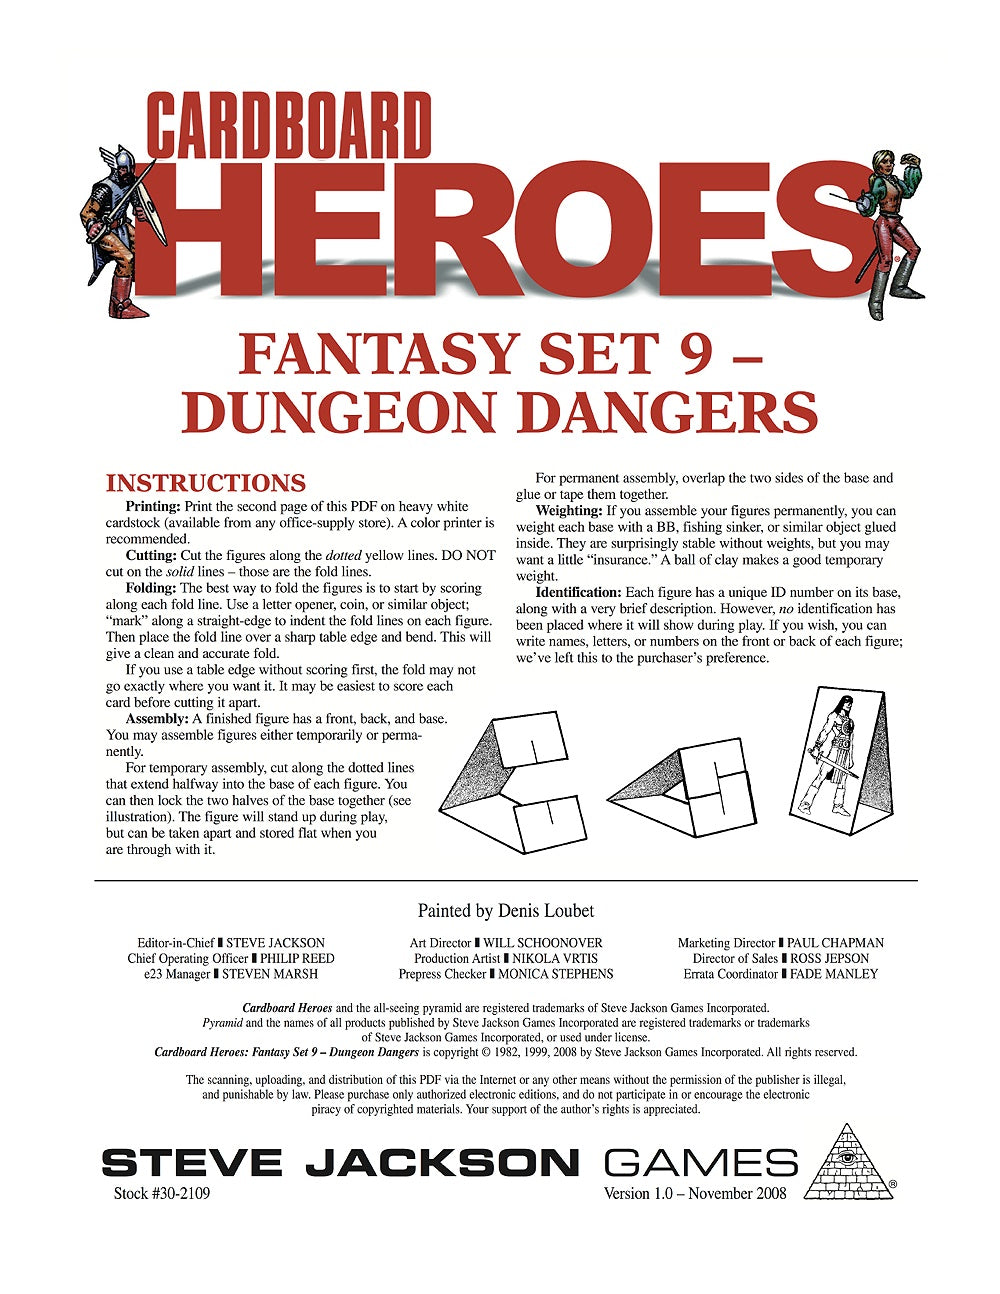 Cardboard Heroes: Fantasy Set 09 - Dungeon Dangers